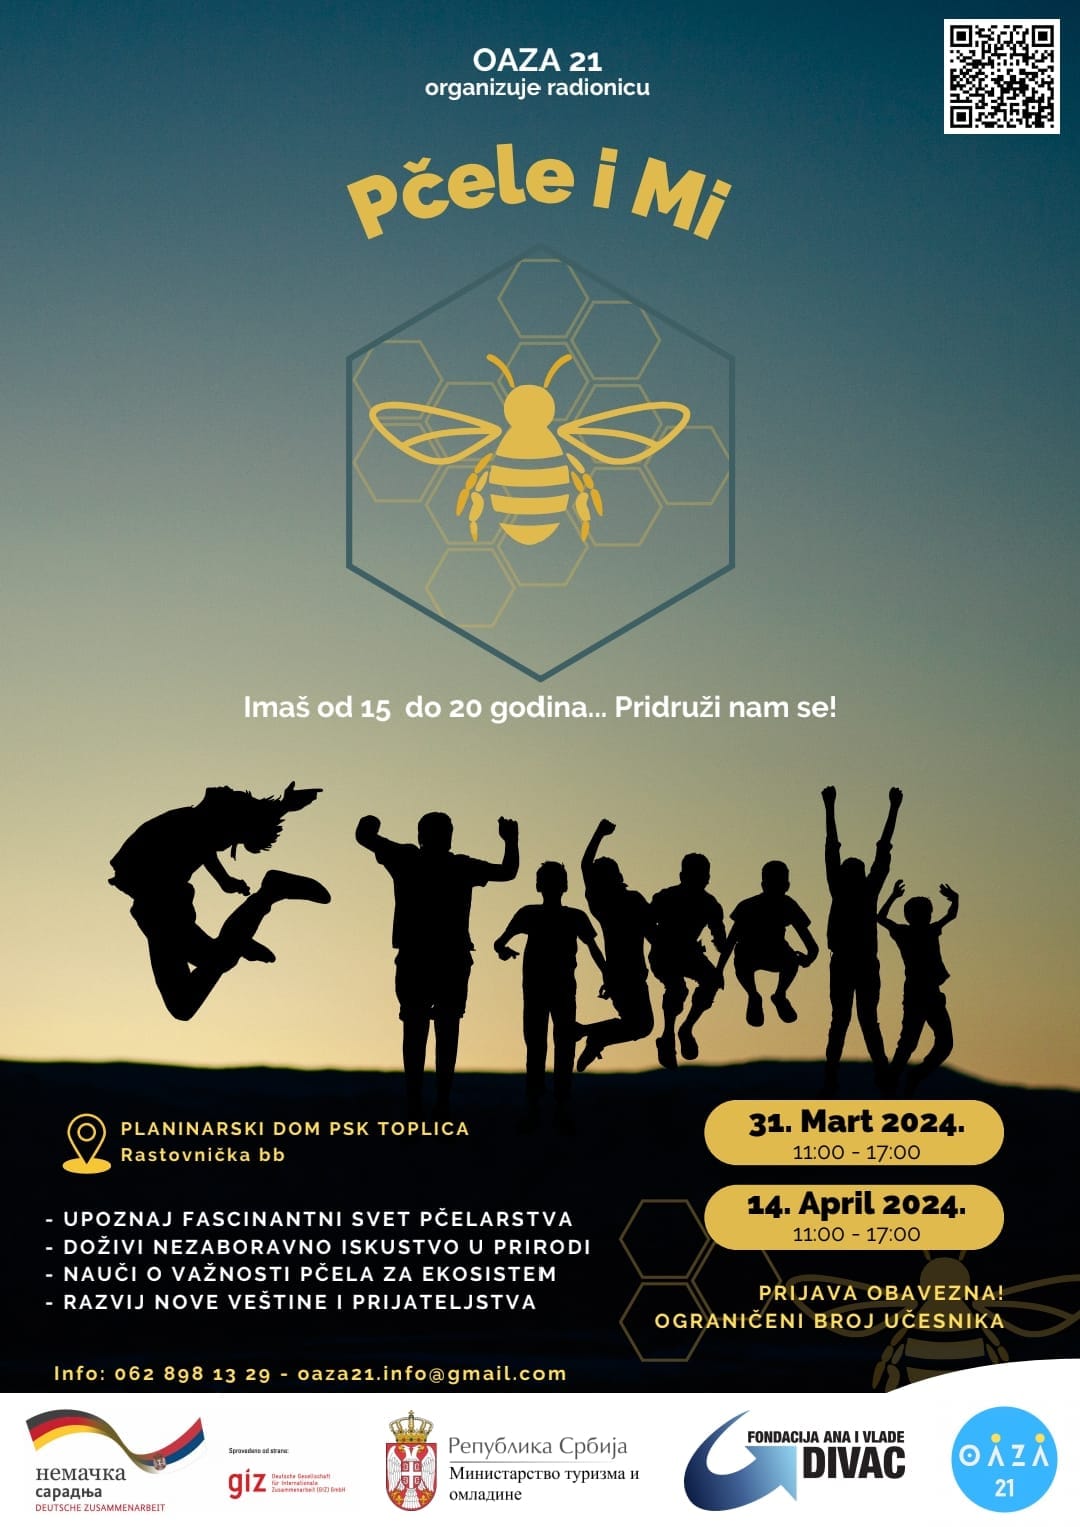 Oaza 21 organizuje radionicu „Pčele i mi“